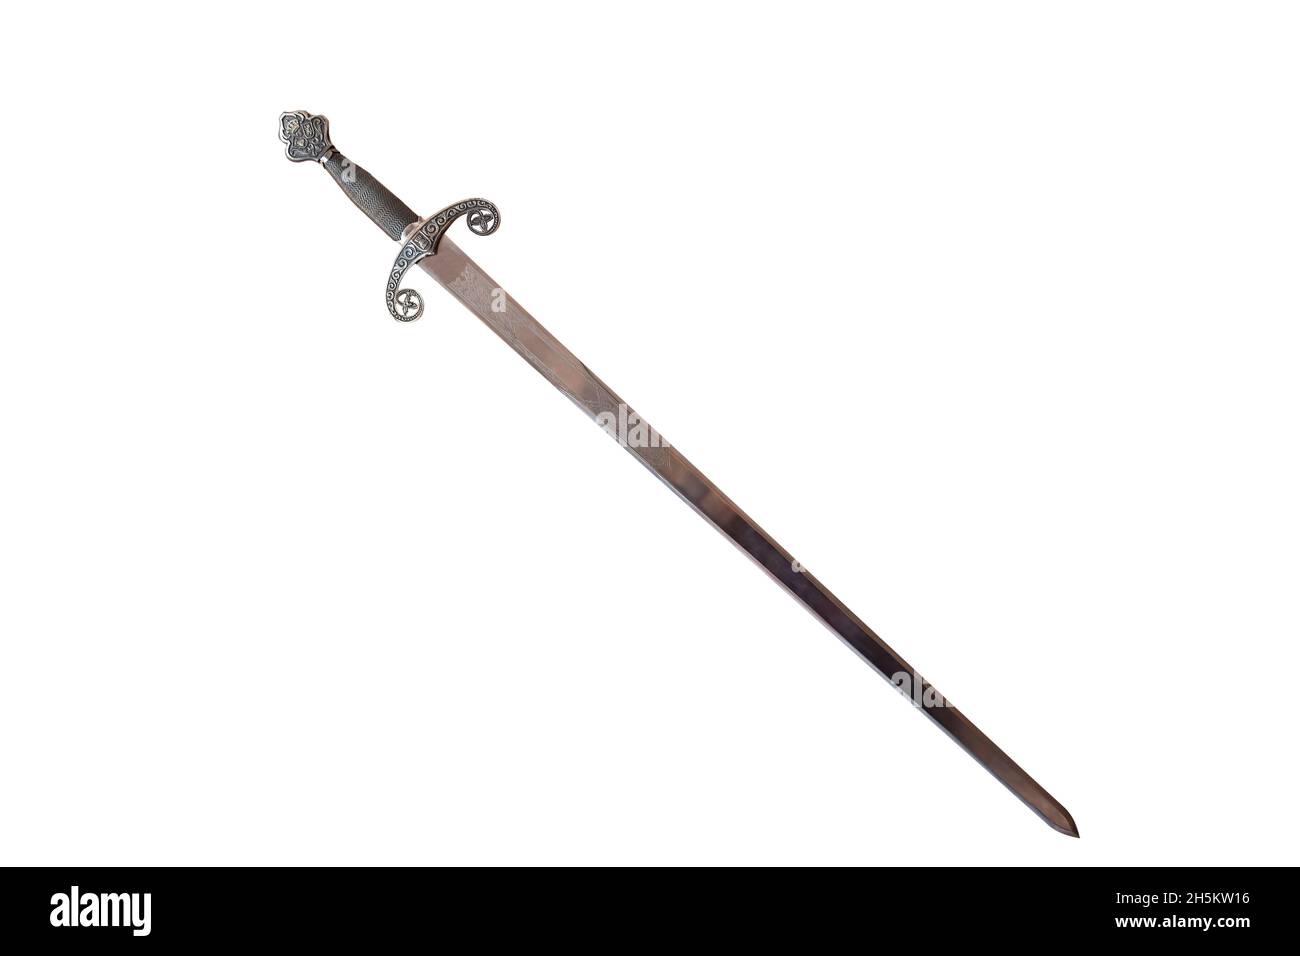 Épée espagnole antique de la période médiévale isolée sur fond blanc Banque D'Images